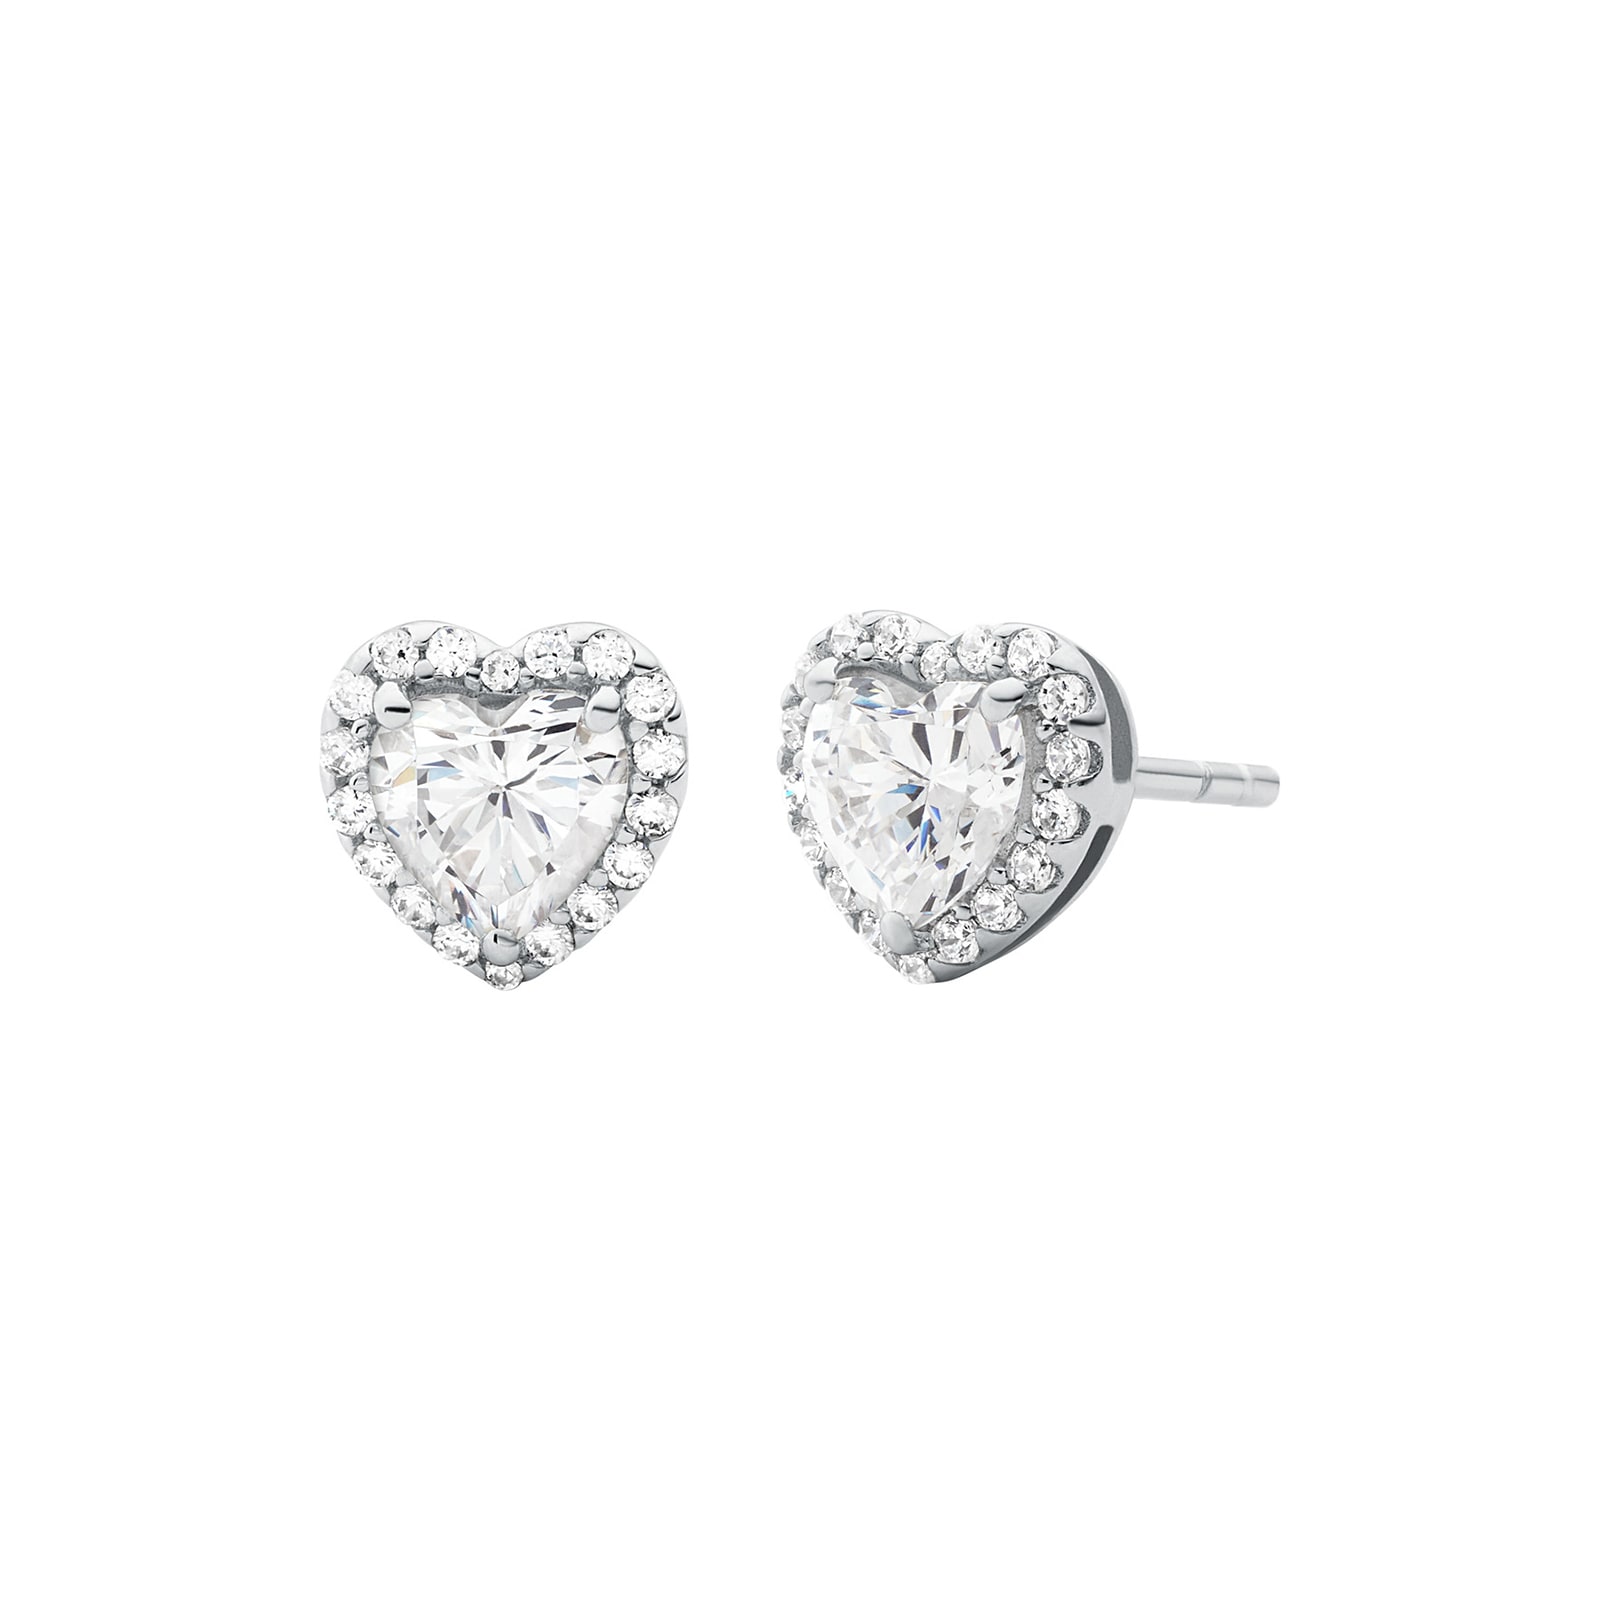 Silver Heart Crystal Stud Earrings